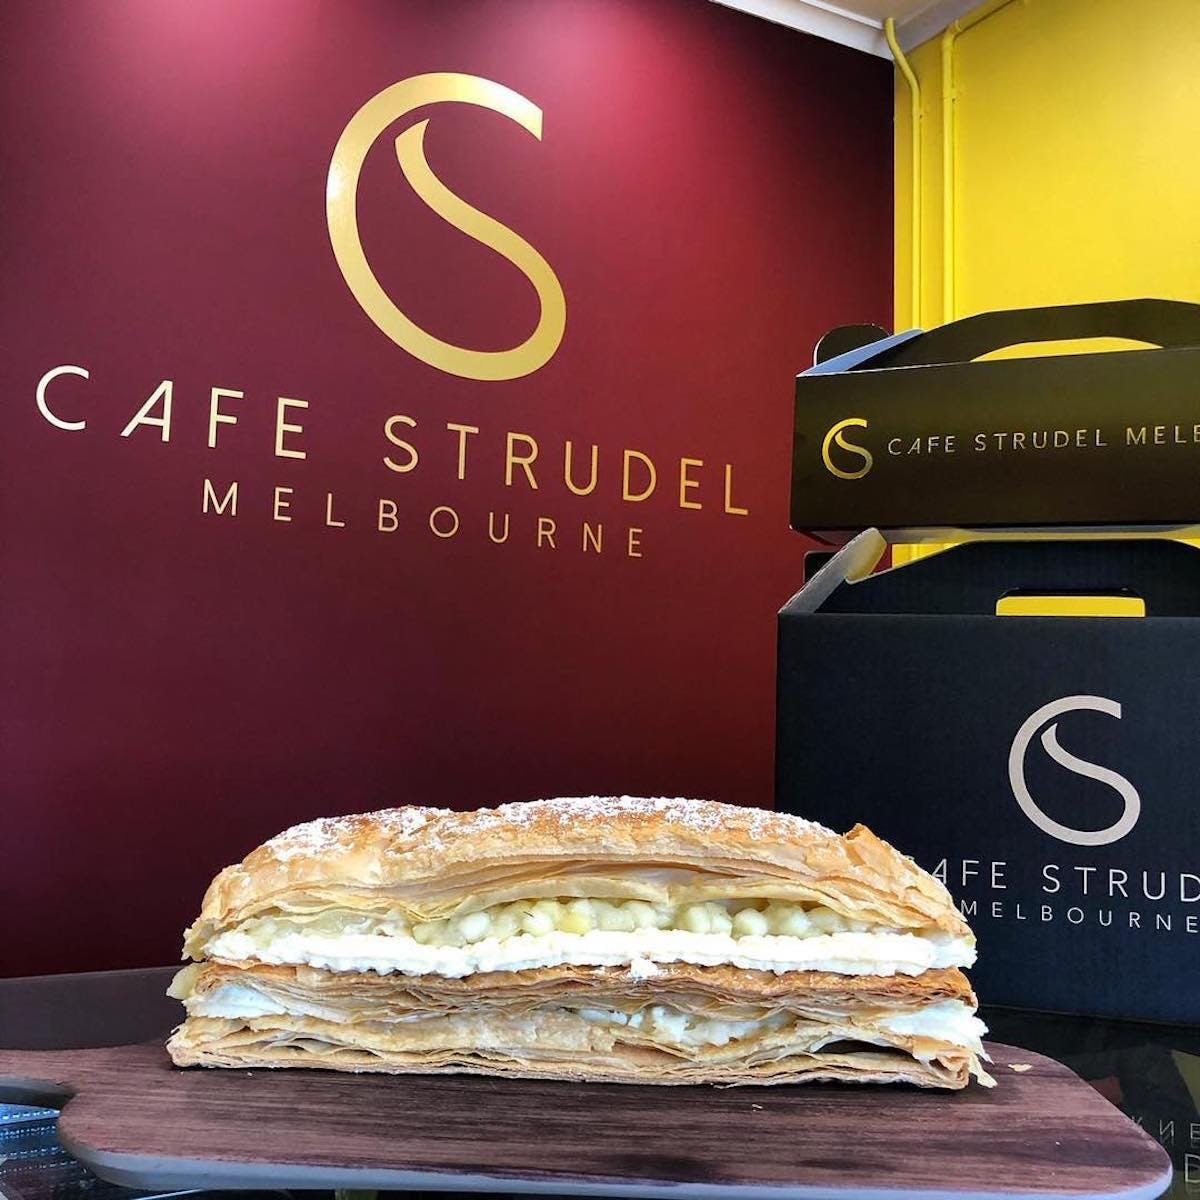 Cafe Strudel Melbourne - Tourism Gold Coast